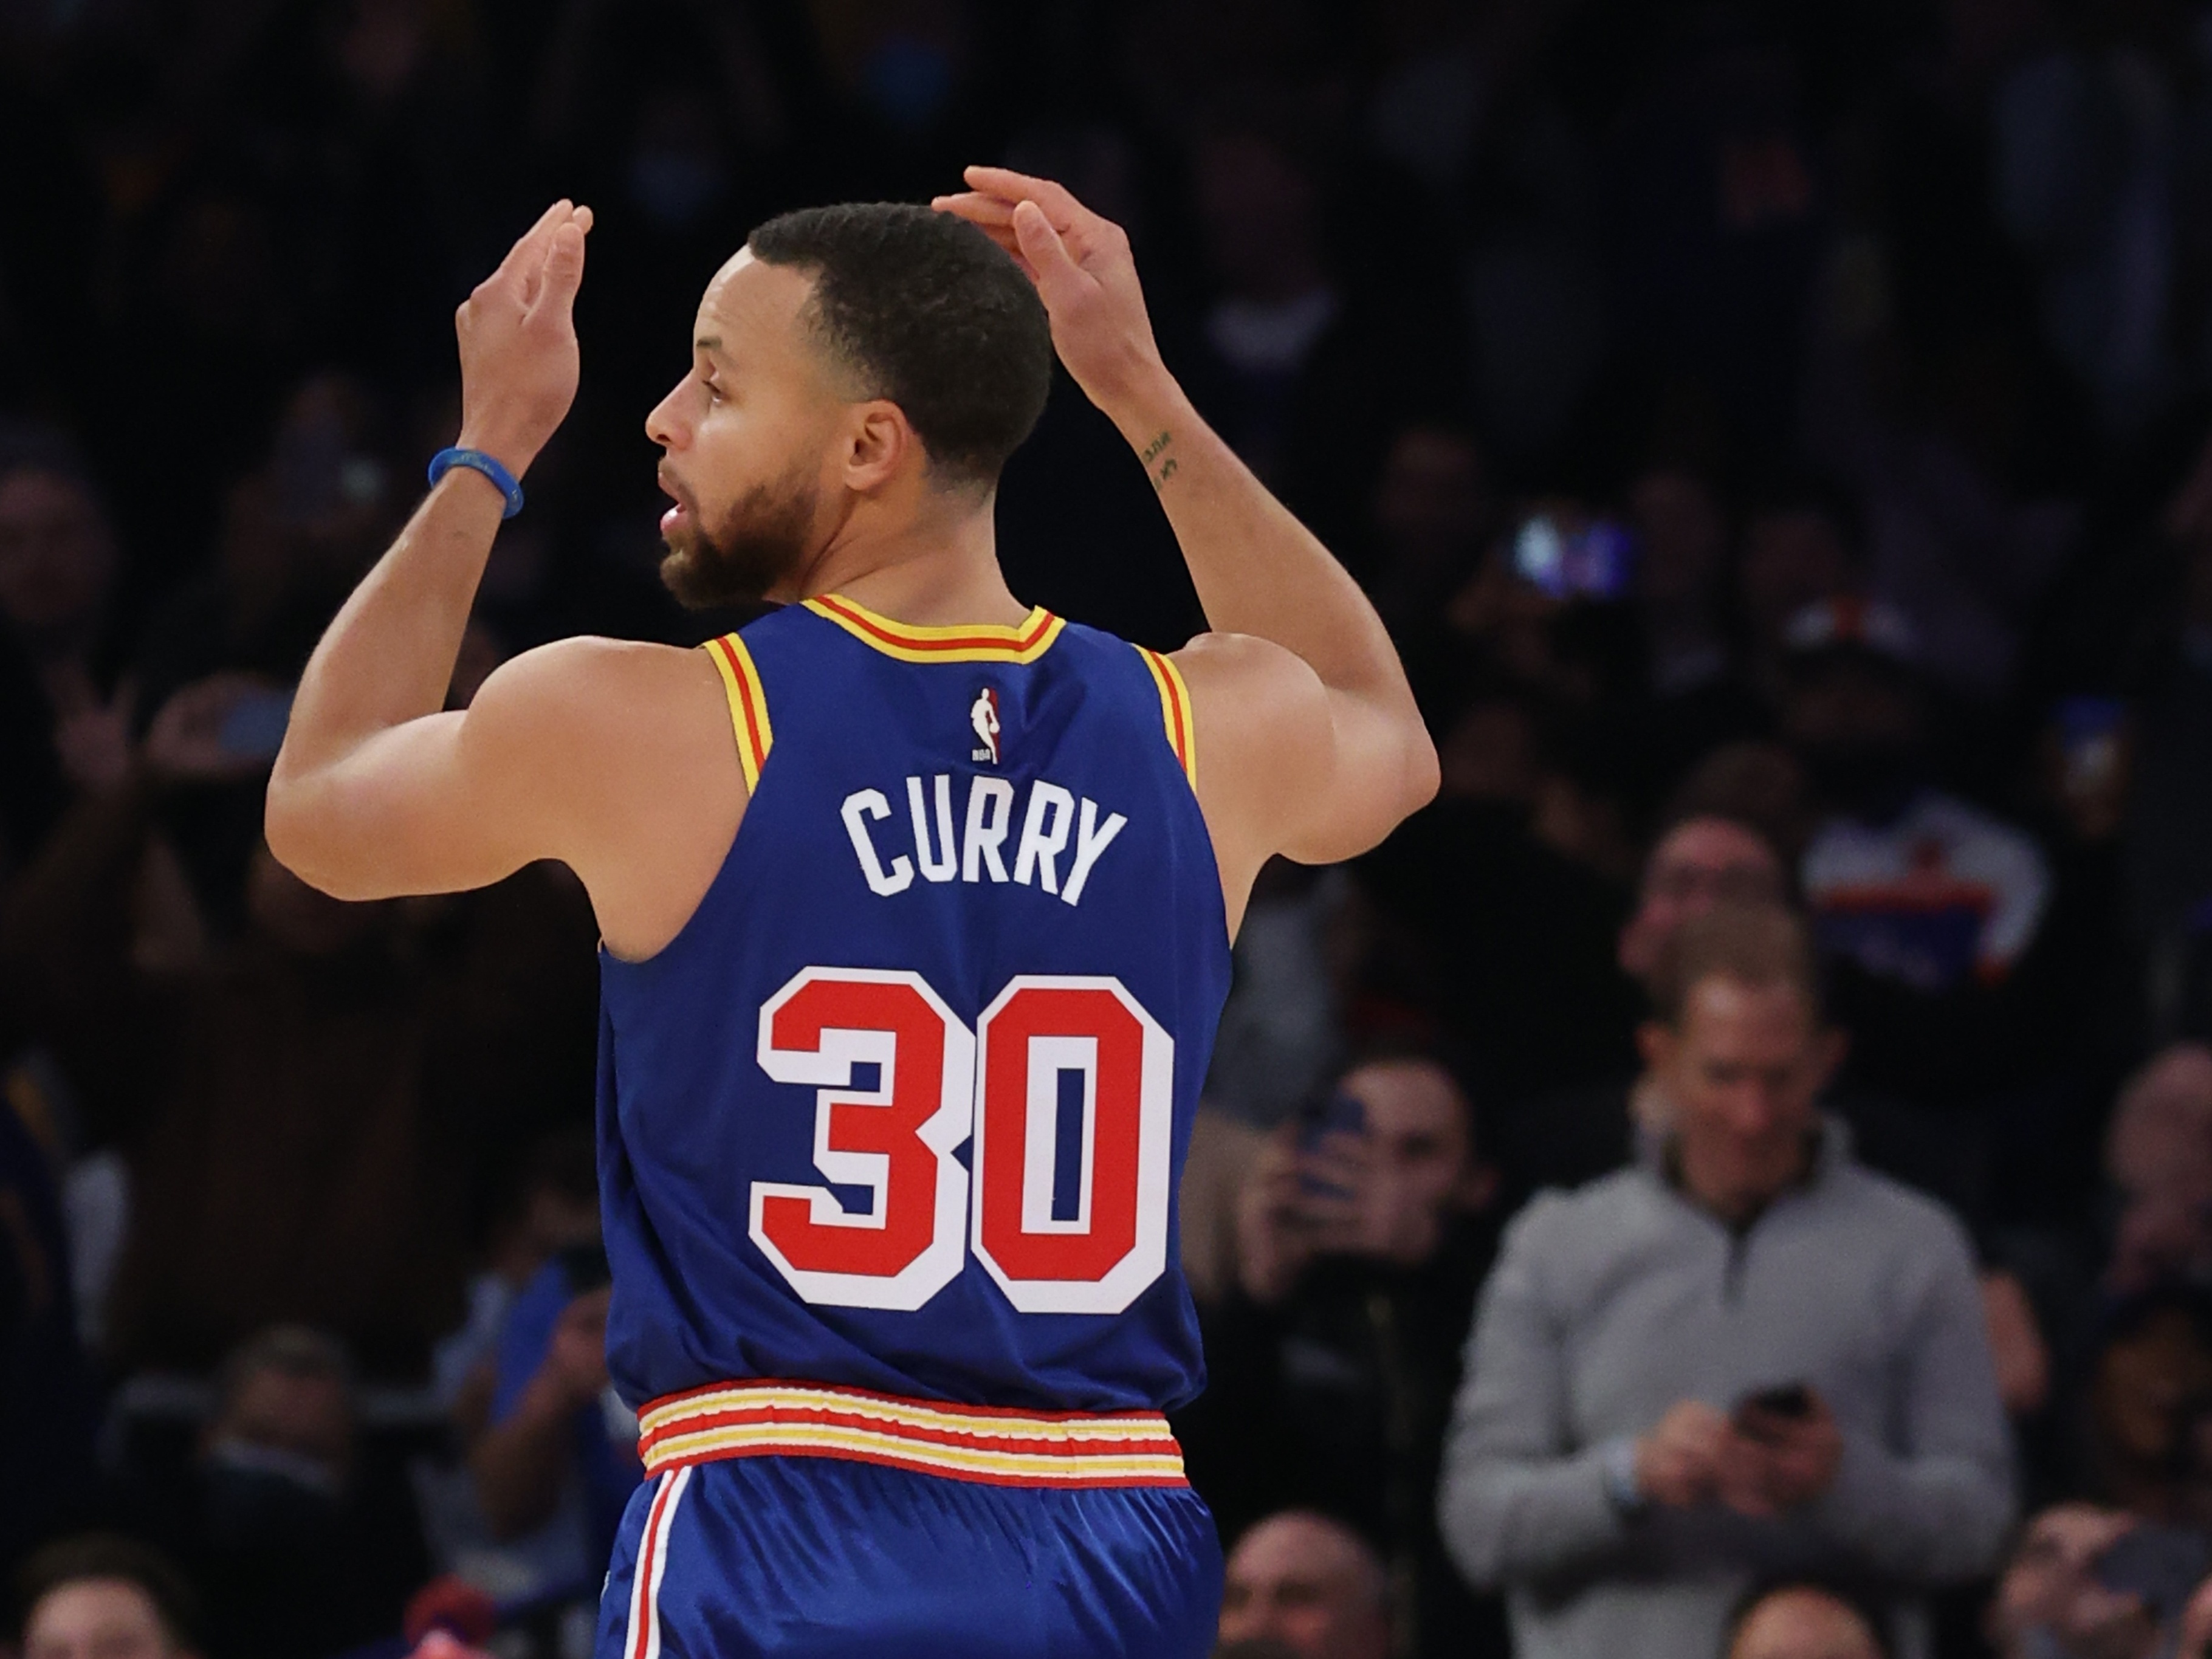 Os maiores nomes da NBA: Stephen Curry - bet365